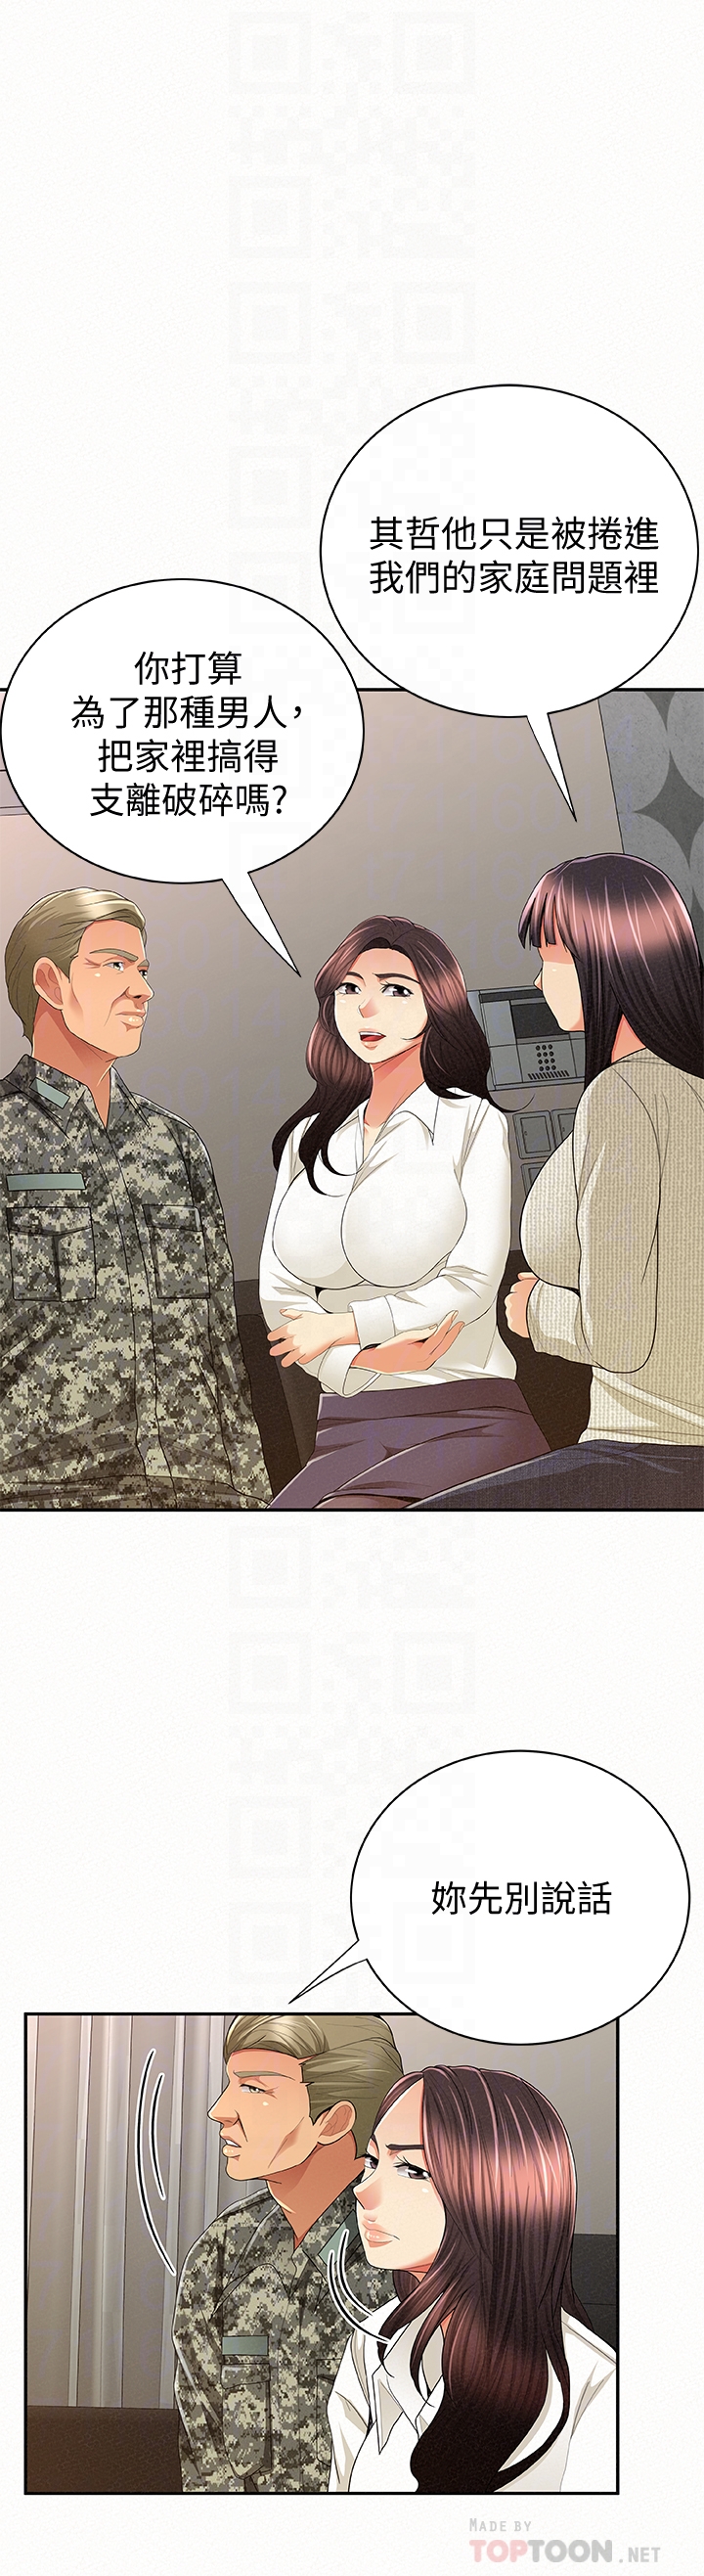 韩国污漫画 報告夫人 最终话-漫长军人生活的尽头 23